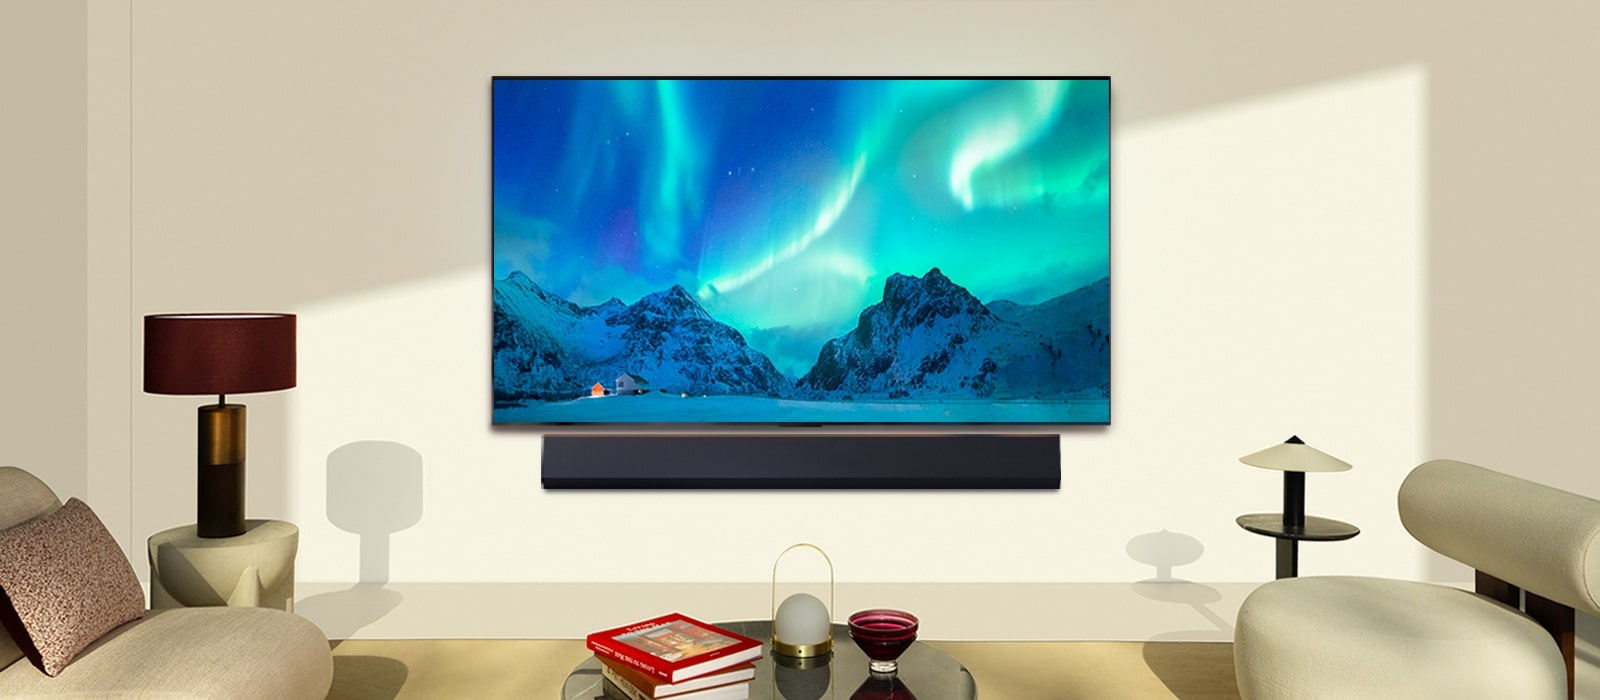 Ein LG OLED TV in einem modernen Wohnraum bei Tag. Das Bild des Polarlichts wird auf dem Bildschirm mit der idealen Helligkeitsstufe angezeigt.